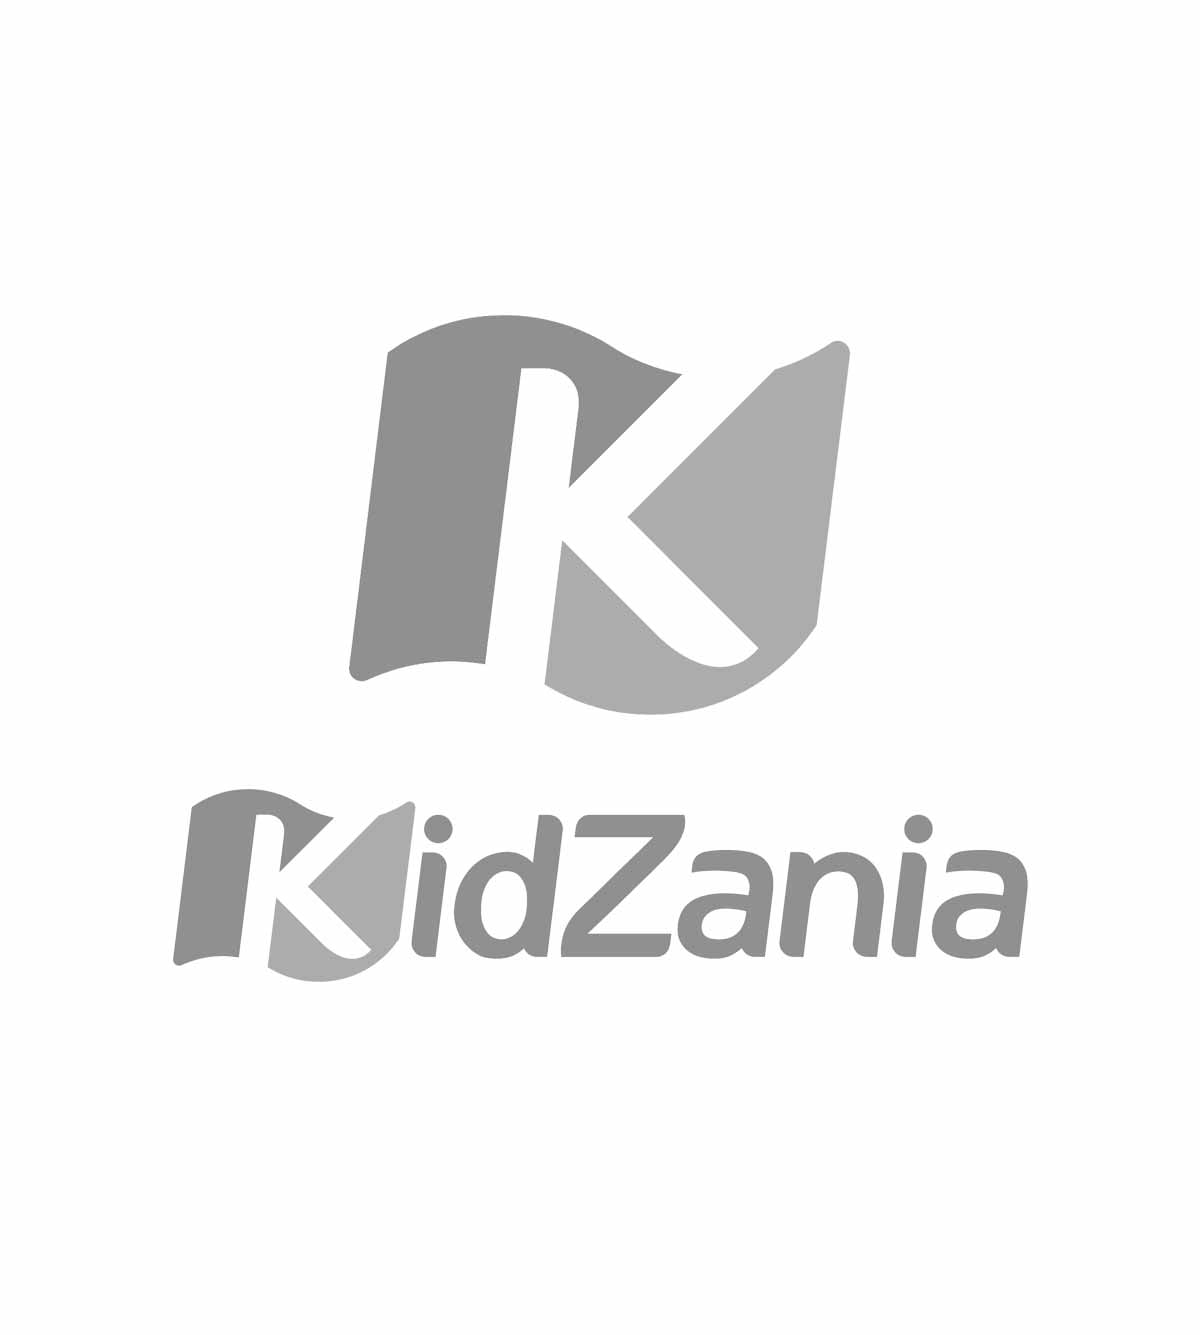 Supplying Slush to Kidzania